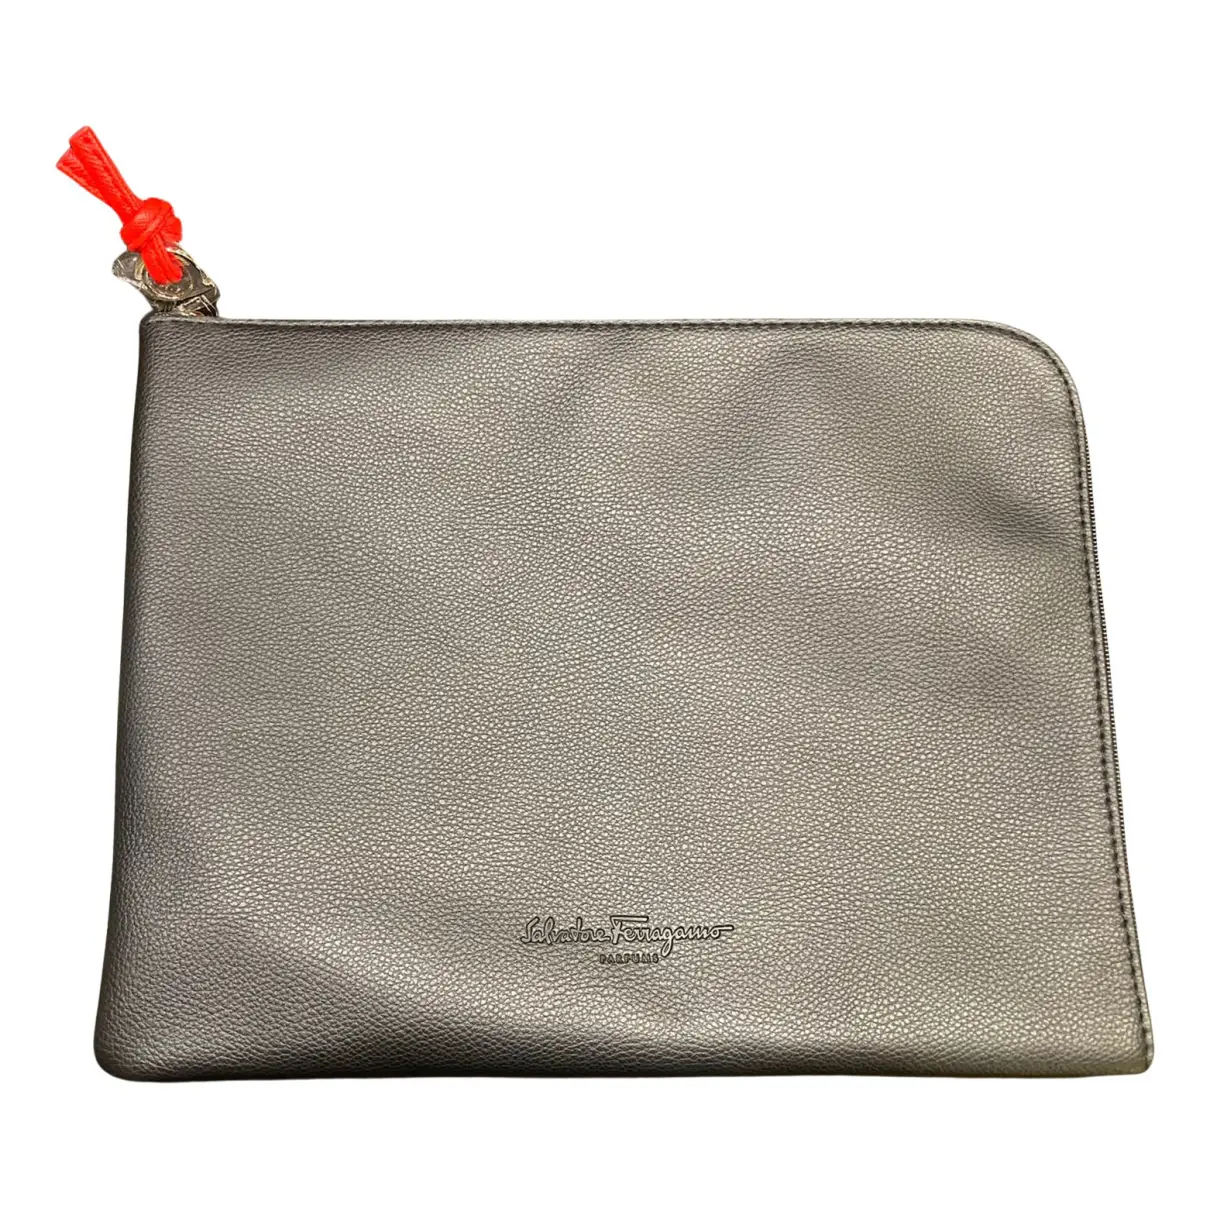 Leather clutch bag Salvatore Ferragamo